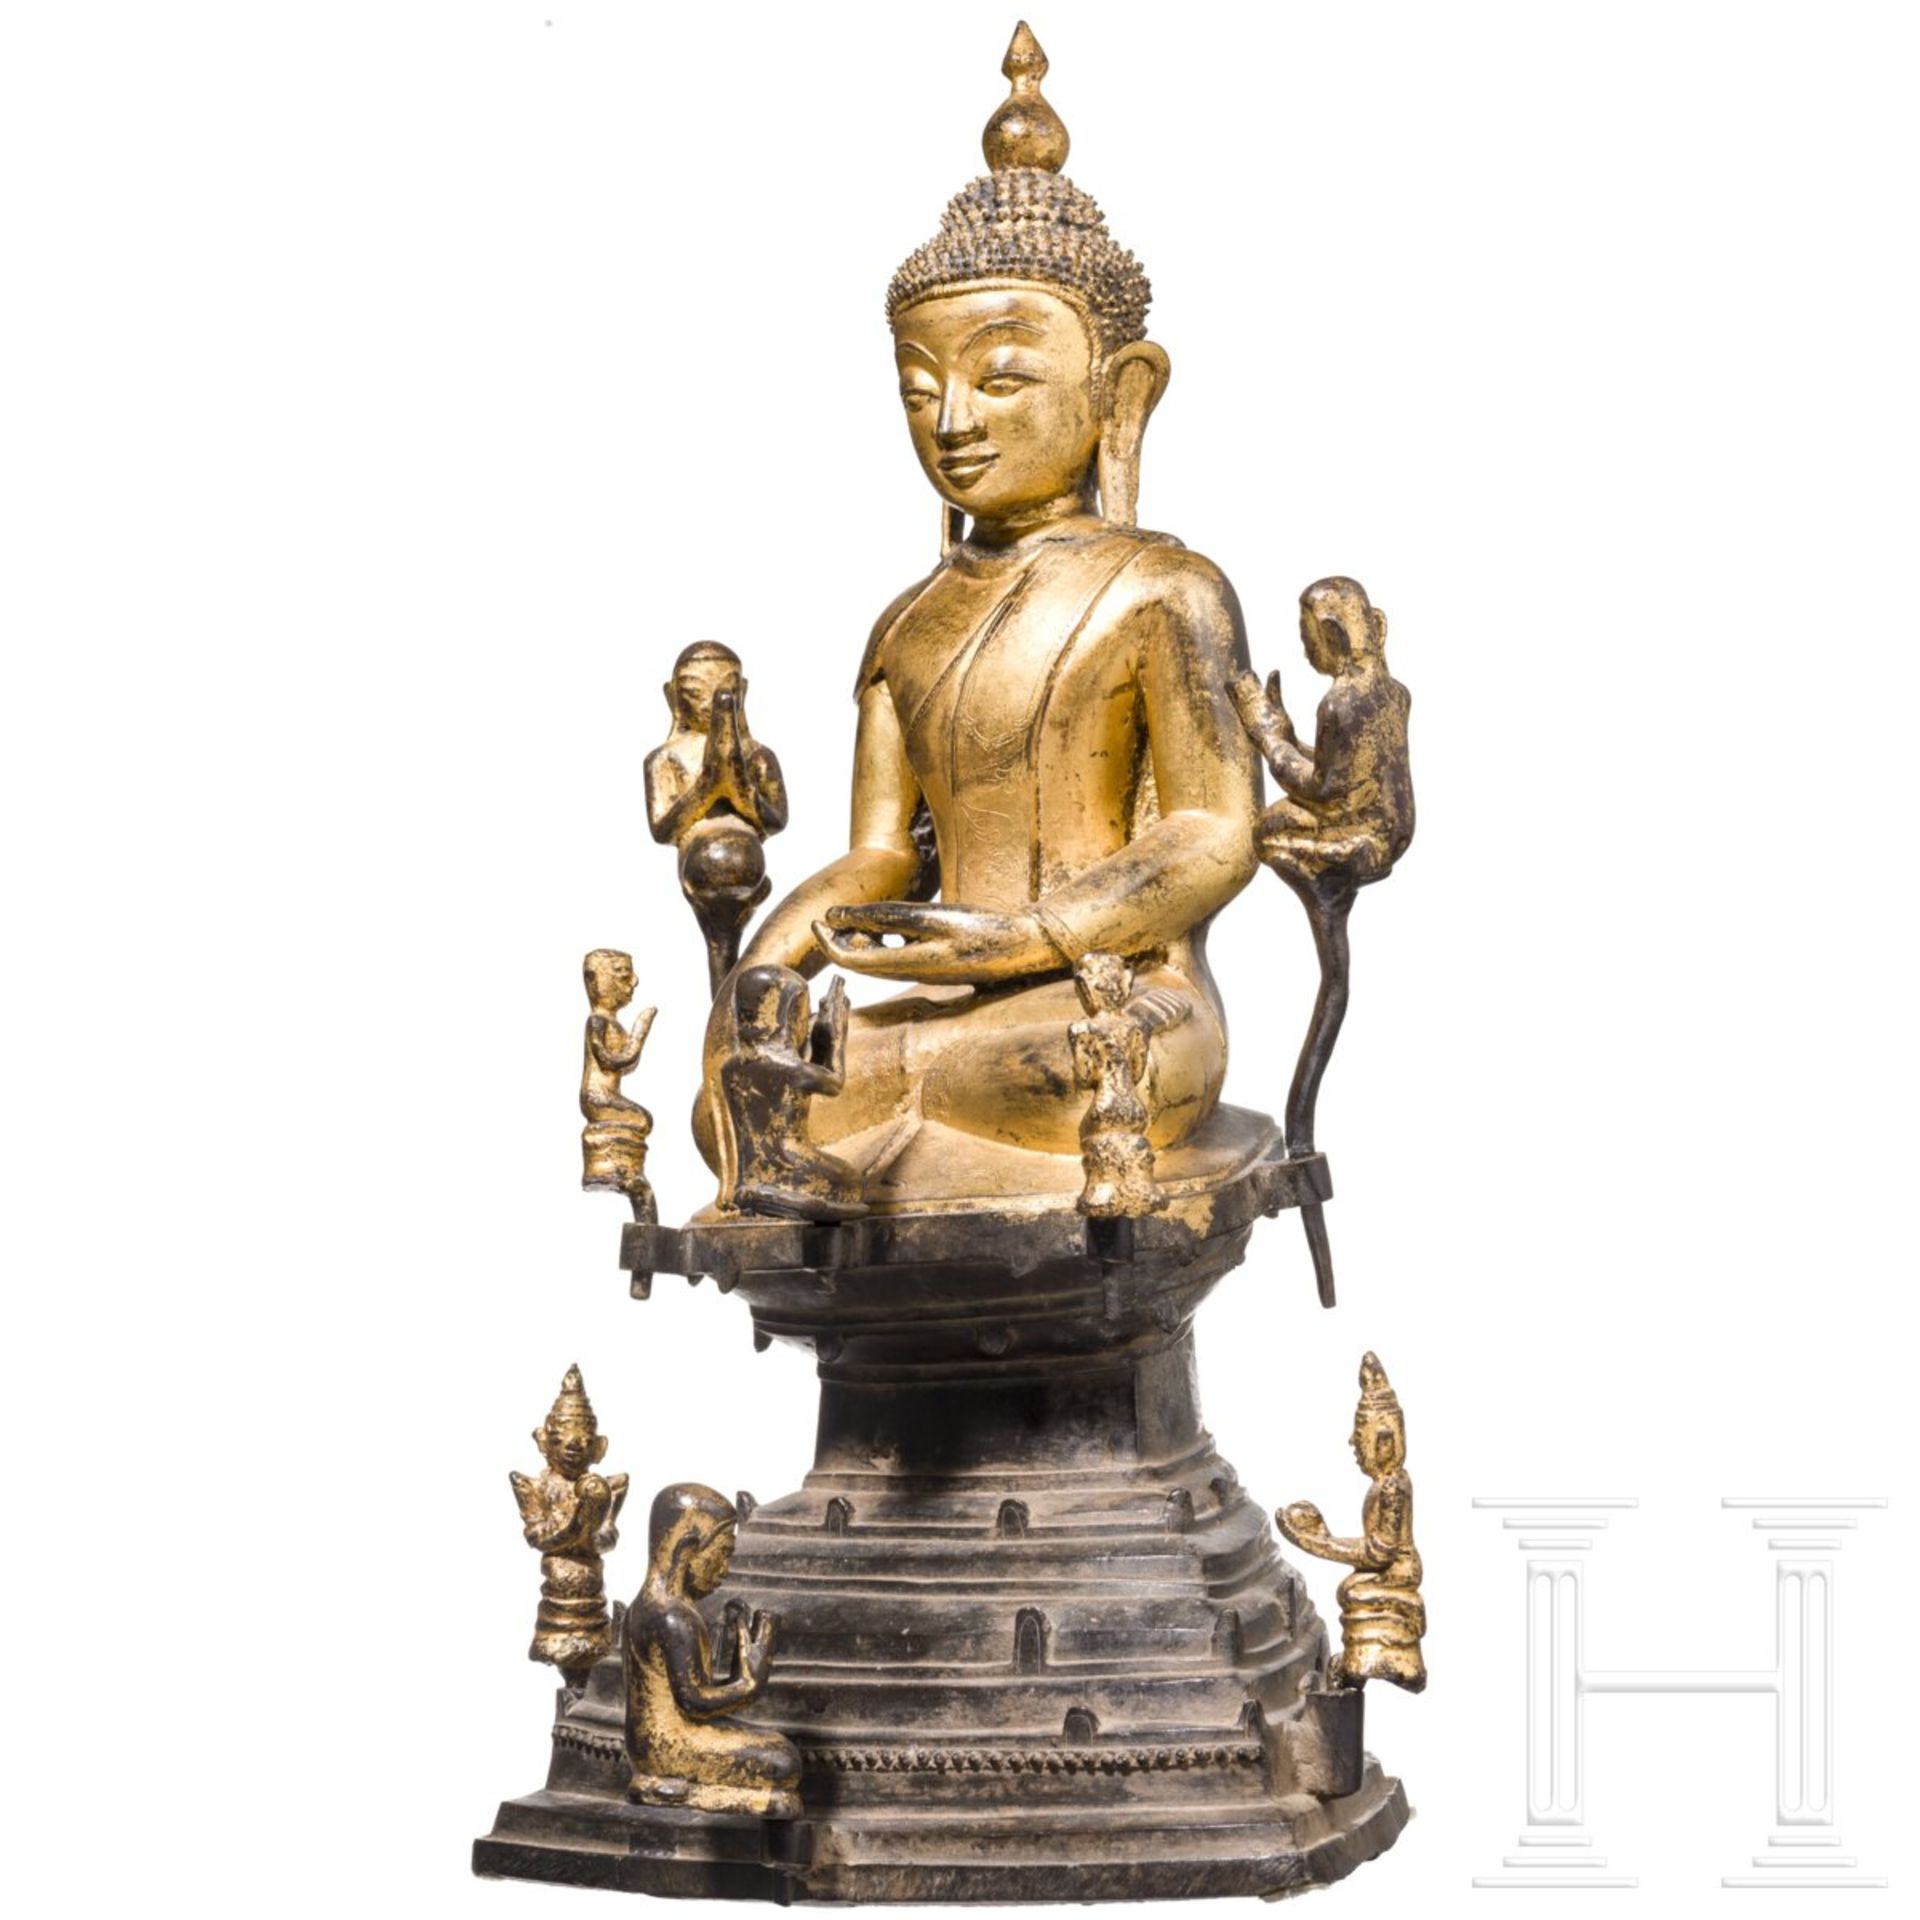 Lackierte und vergoldete Buddhafigur, Burma, 17./18. Jhdt. - Bild 2 aus 7